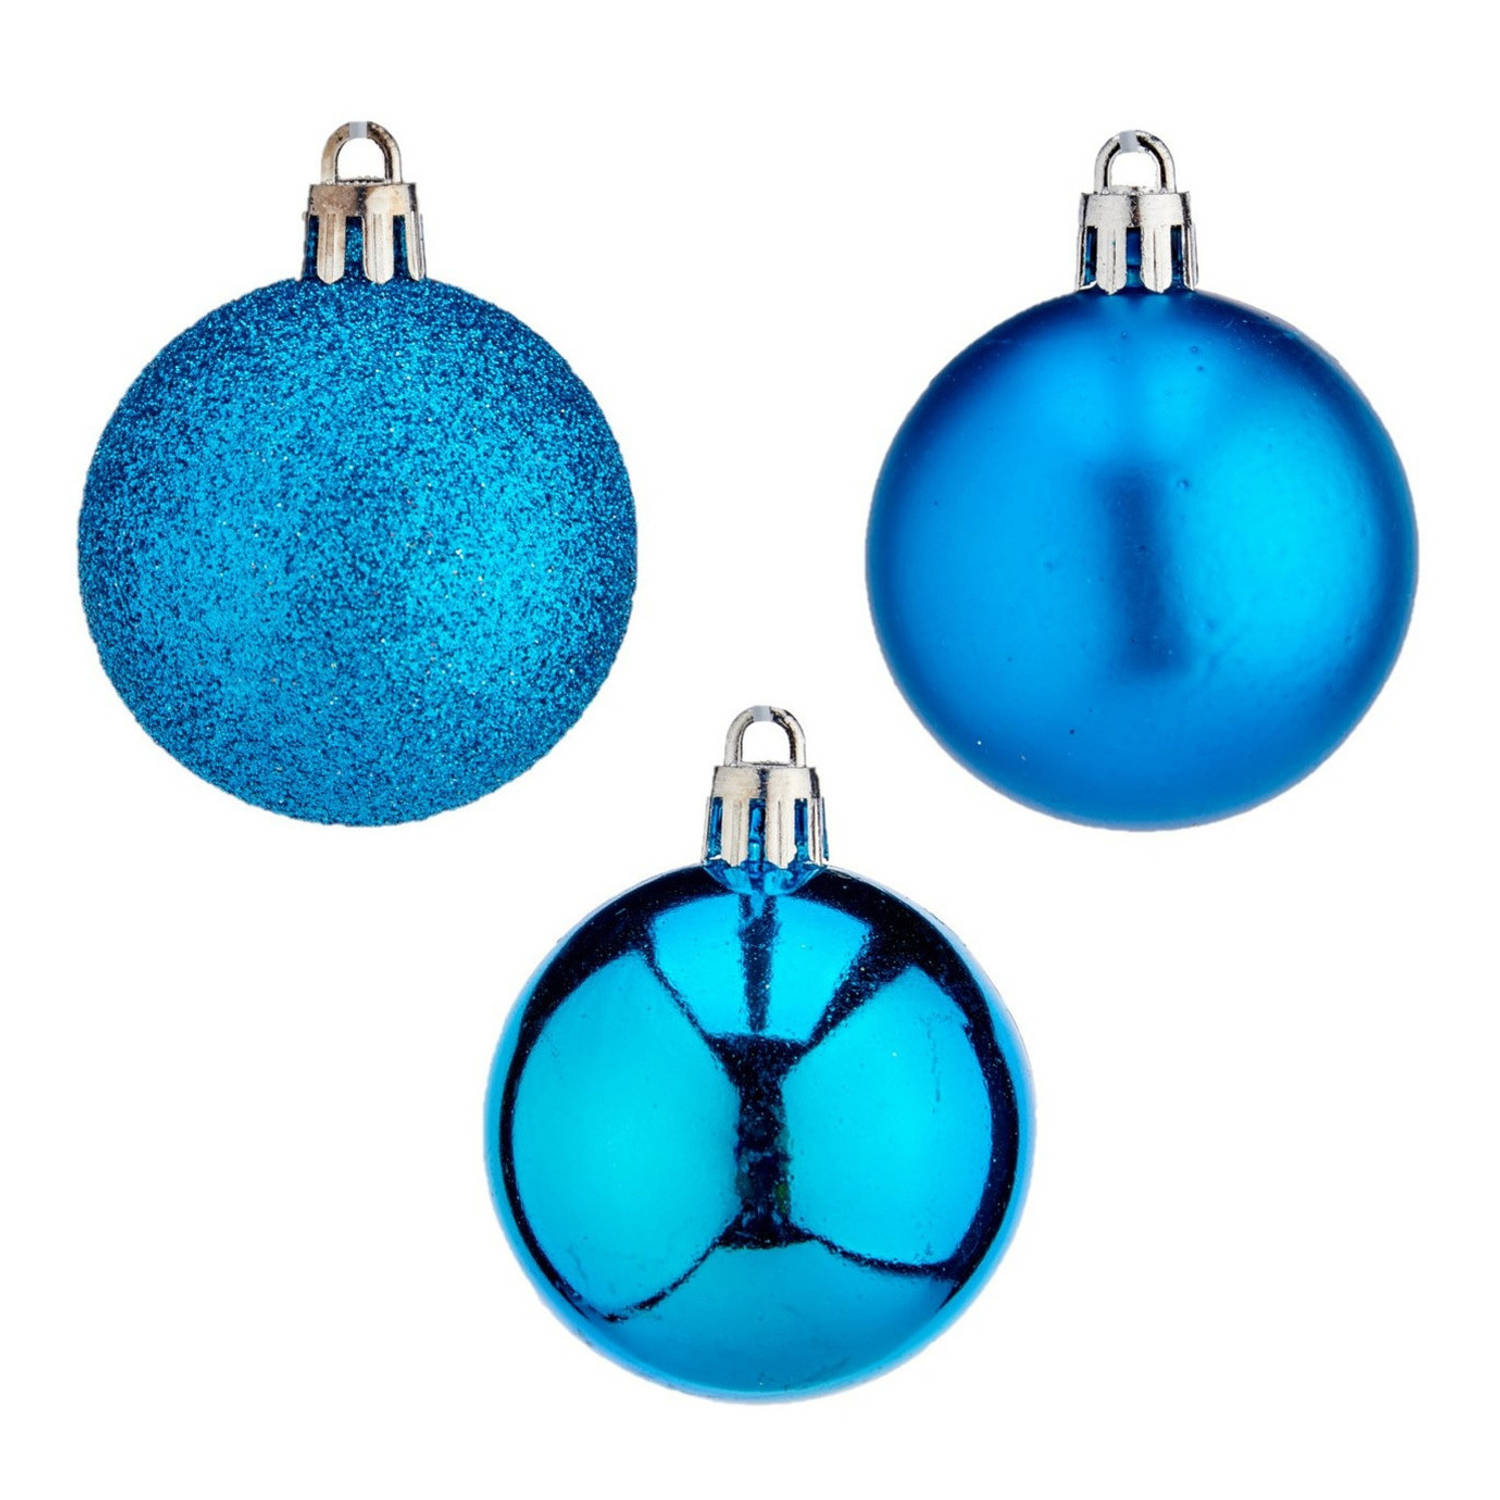 24x Stuks Kerstballen Helder Blauw Kunststof 5 Cm Glitter, Glans, Mat Kerstbal